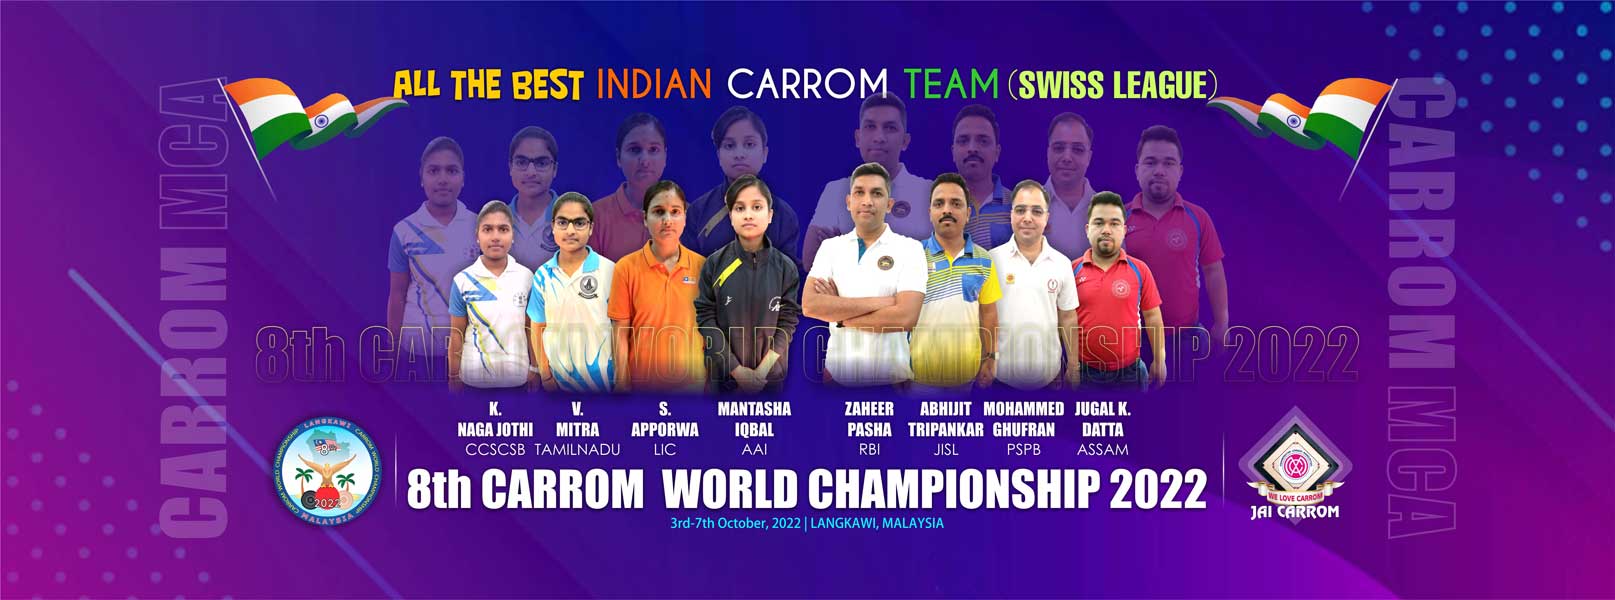 8th Carrom world Championship 2022, Langkawi, Malaysia